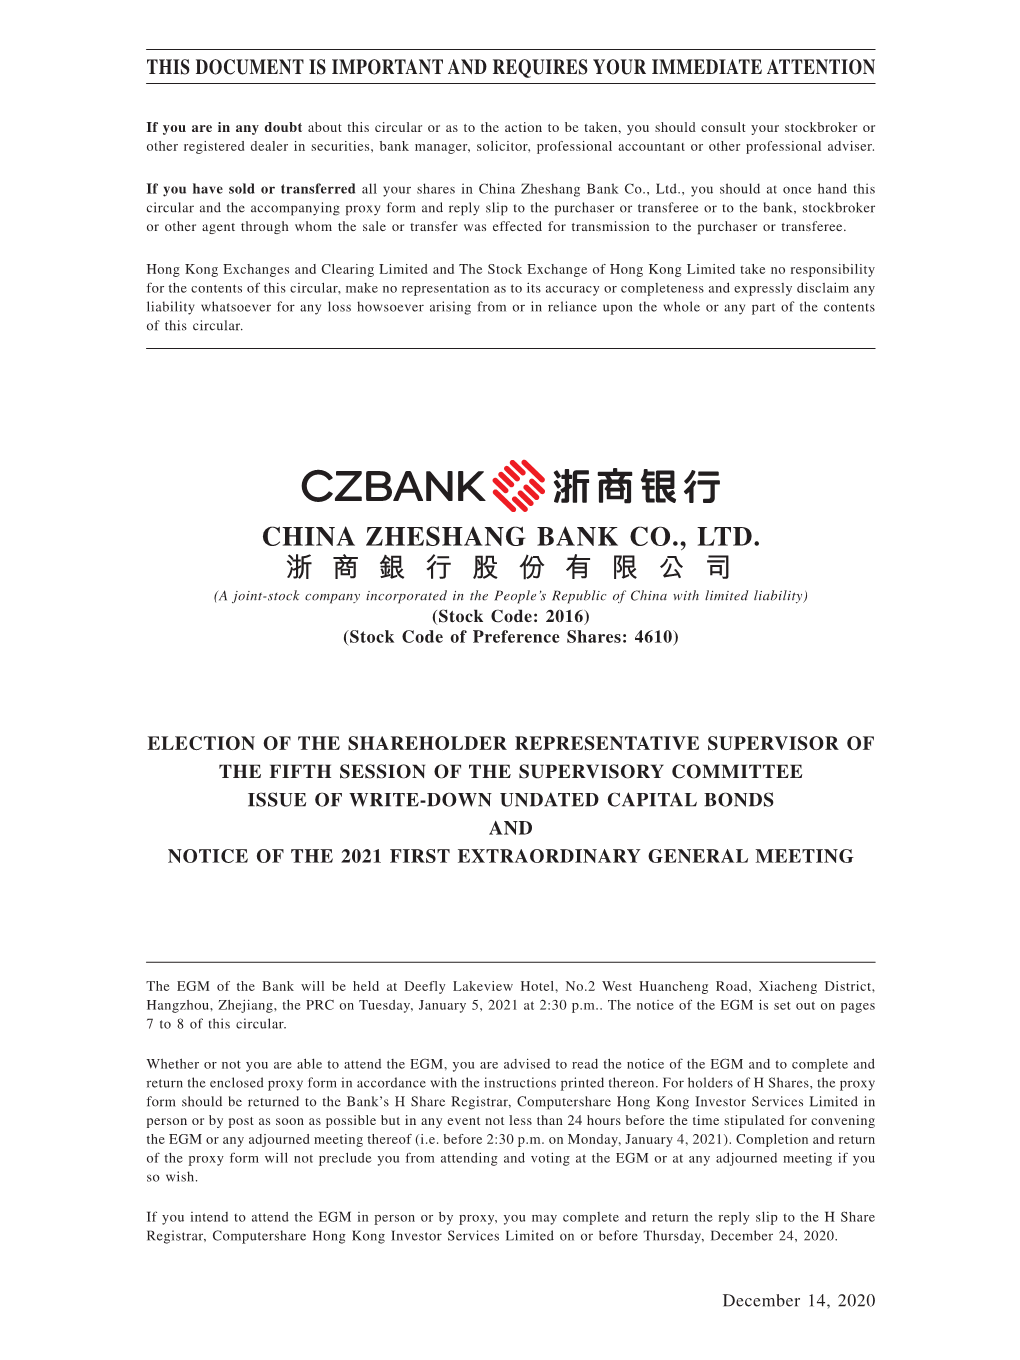 China Zheshang Bank Co., Ltd. 浙 商 銀 行 股 份 有 限